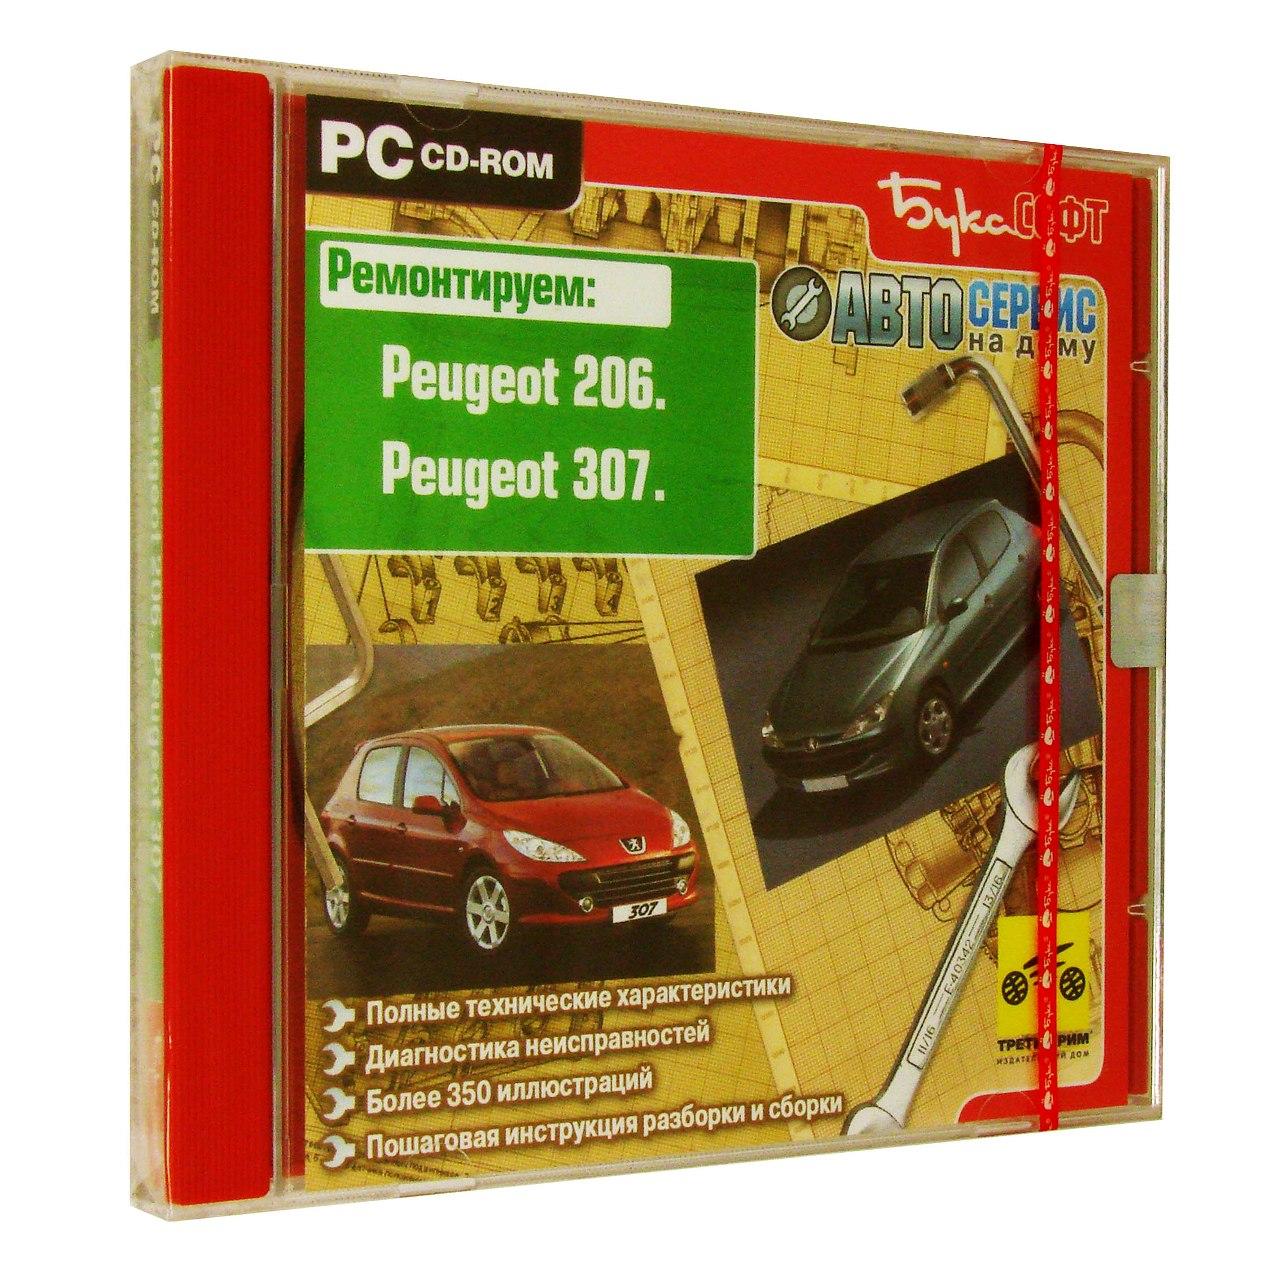 Компьютерный компакт-диск Peugeot 206. Peugeot 307. ’Автосервис на дому’. (ПК), фирма "Бука", 1CD